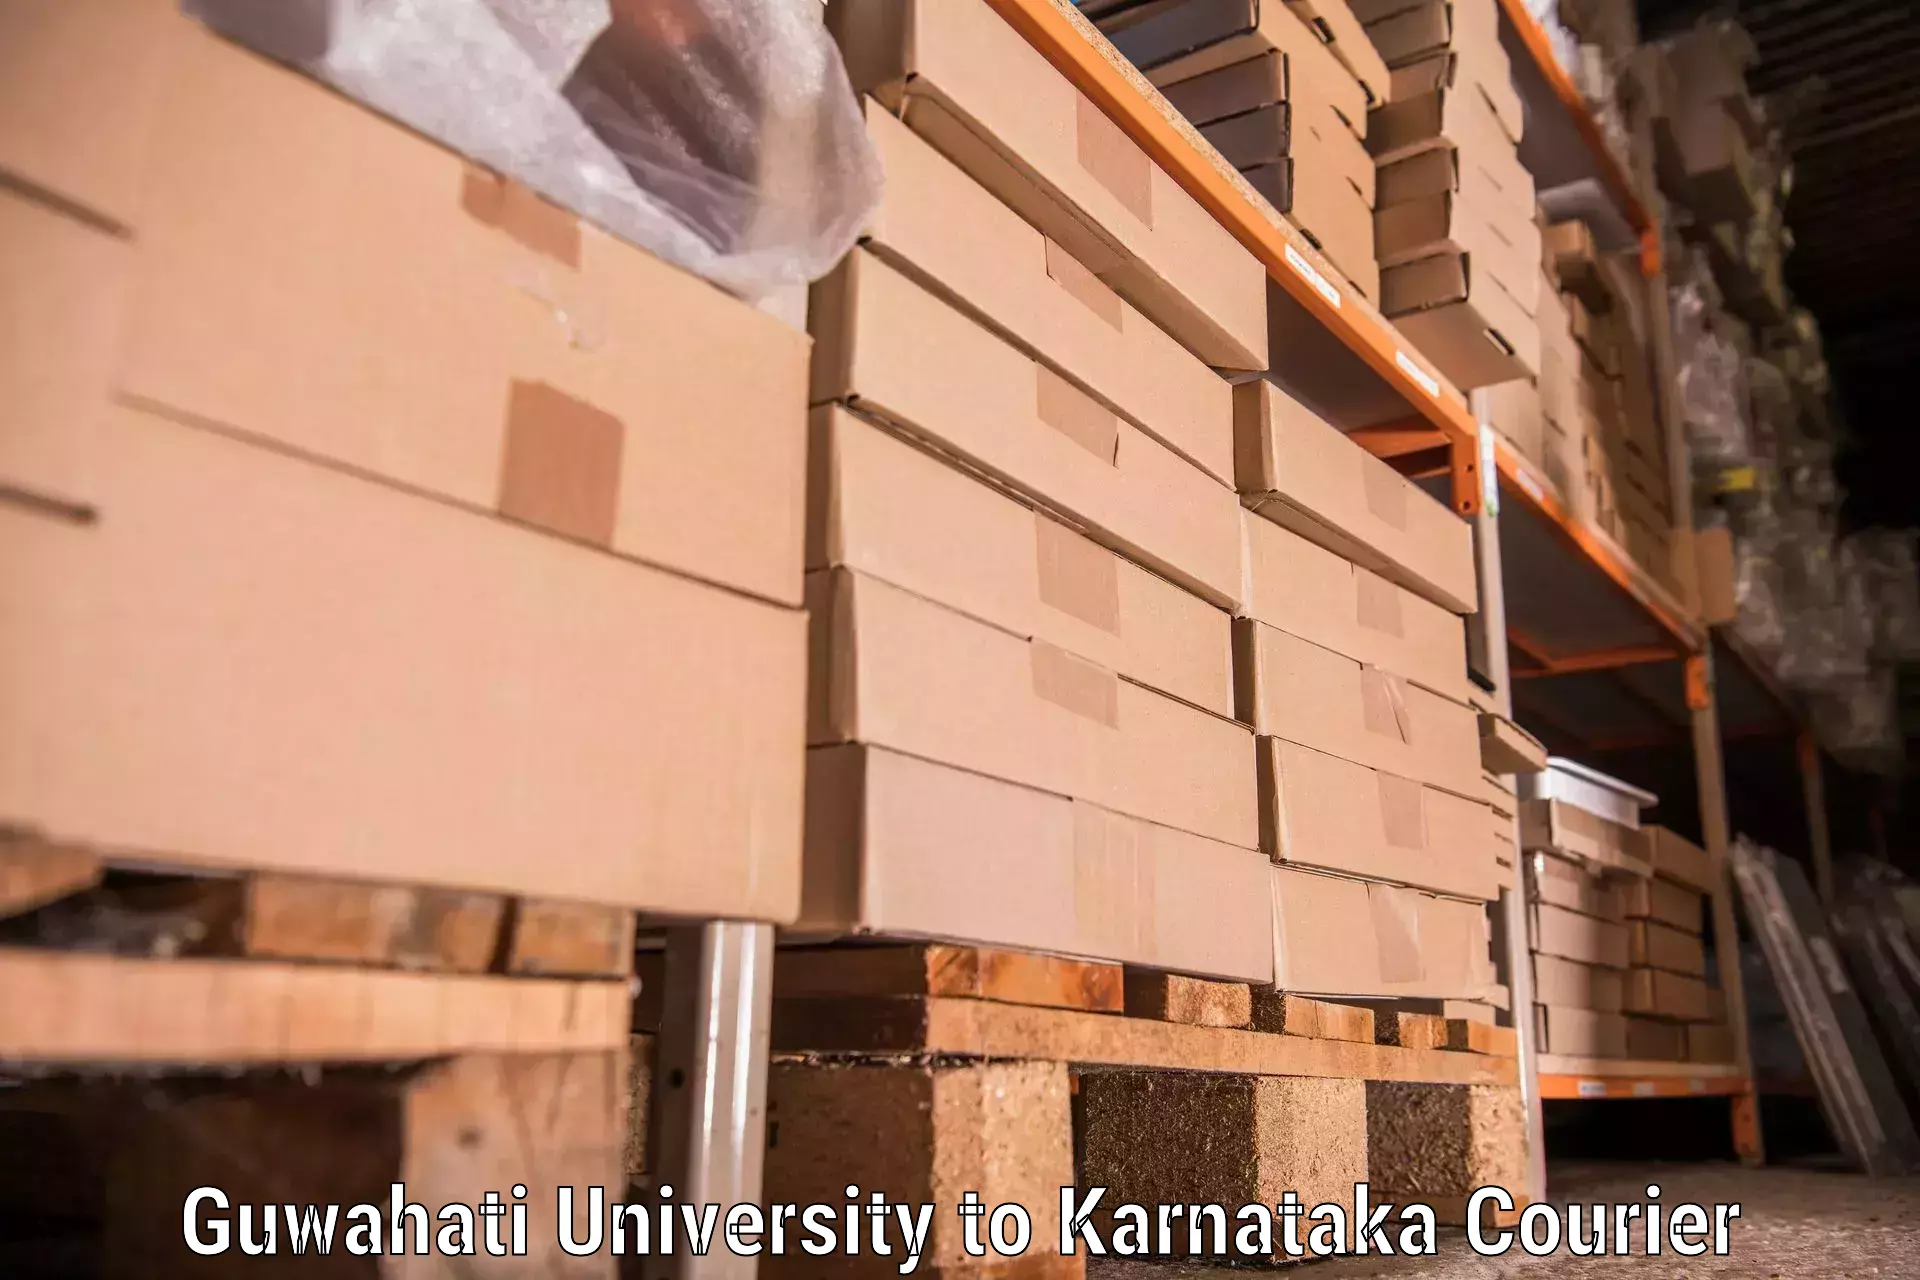 Furniture moving services Guwahati University to Basavakalyan